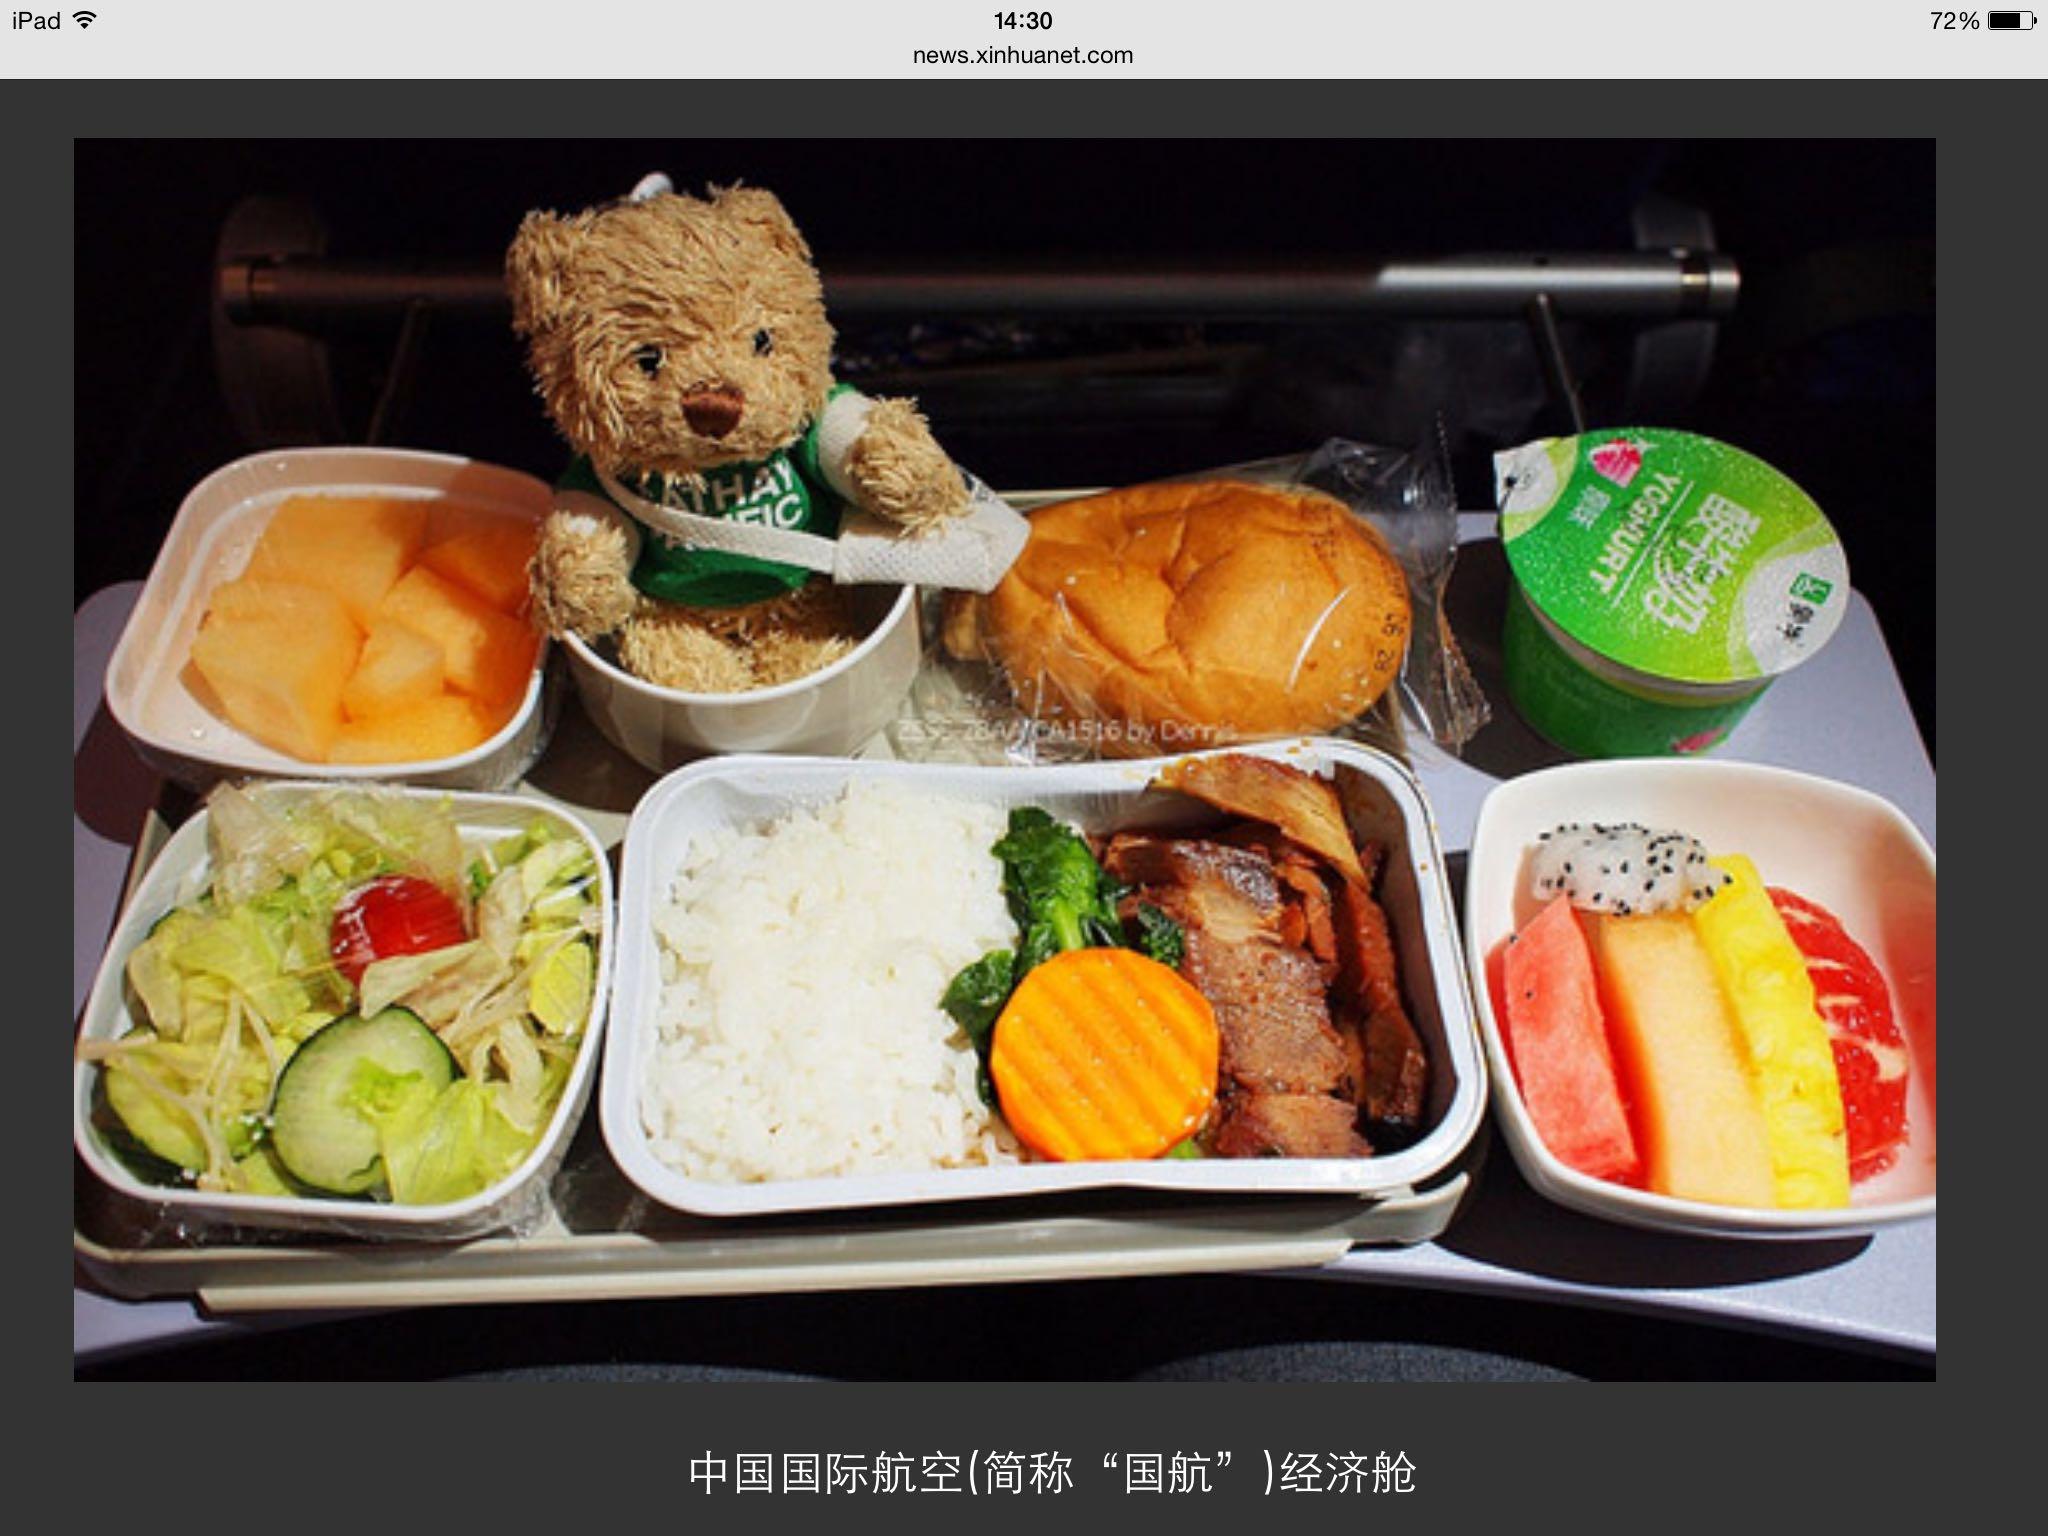 哪家航空公司提供的机上餐食最好吃？ - 知乎